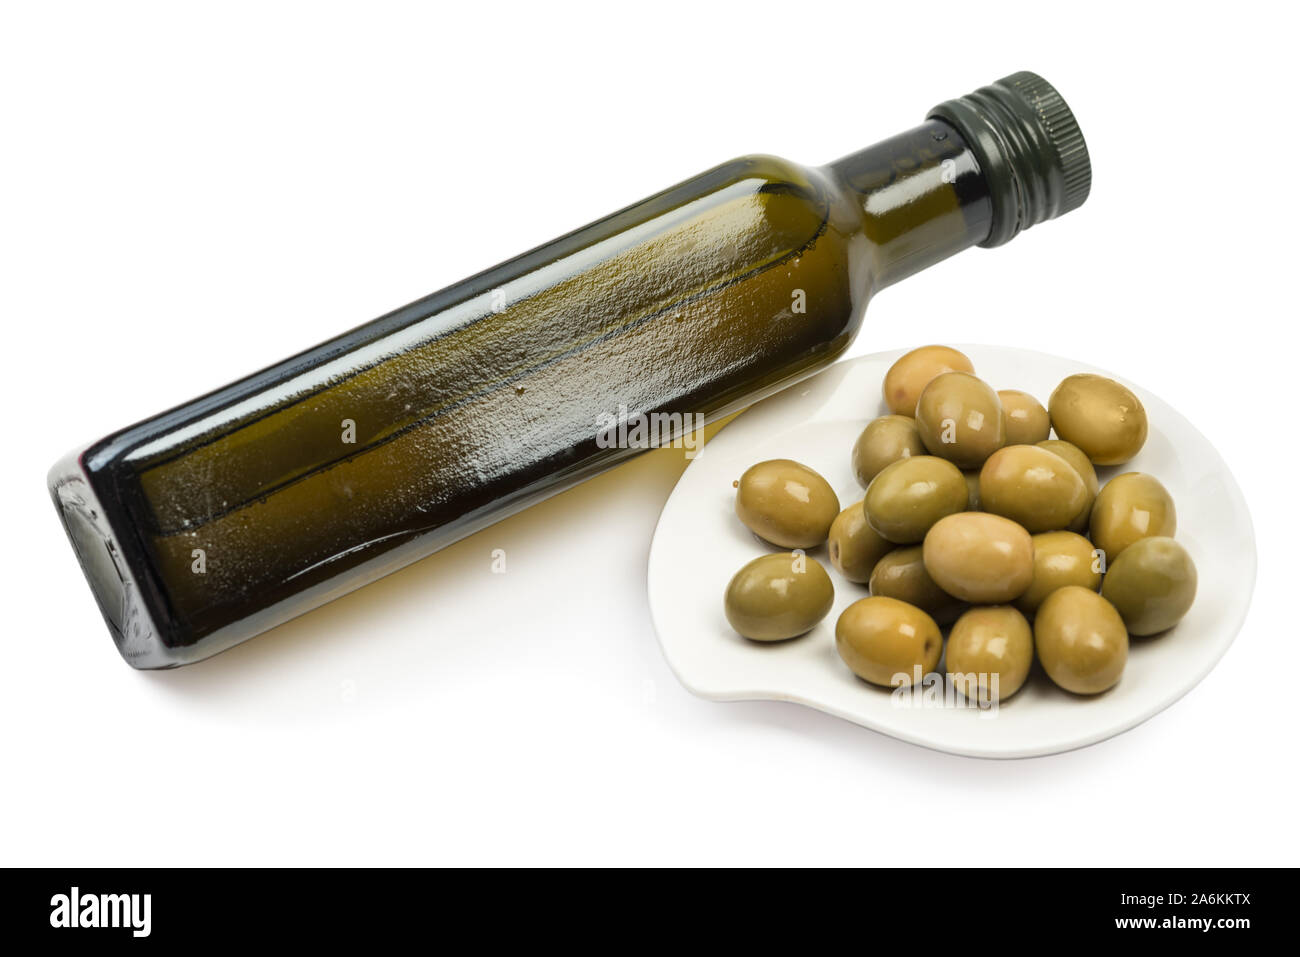 Brown olive bottiglia di olio e olive frutti in corrispondenza della piastra isolata su sfondo bianco con percorso di clipping. Prodotto mock up Foto Stock